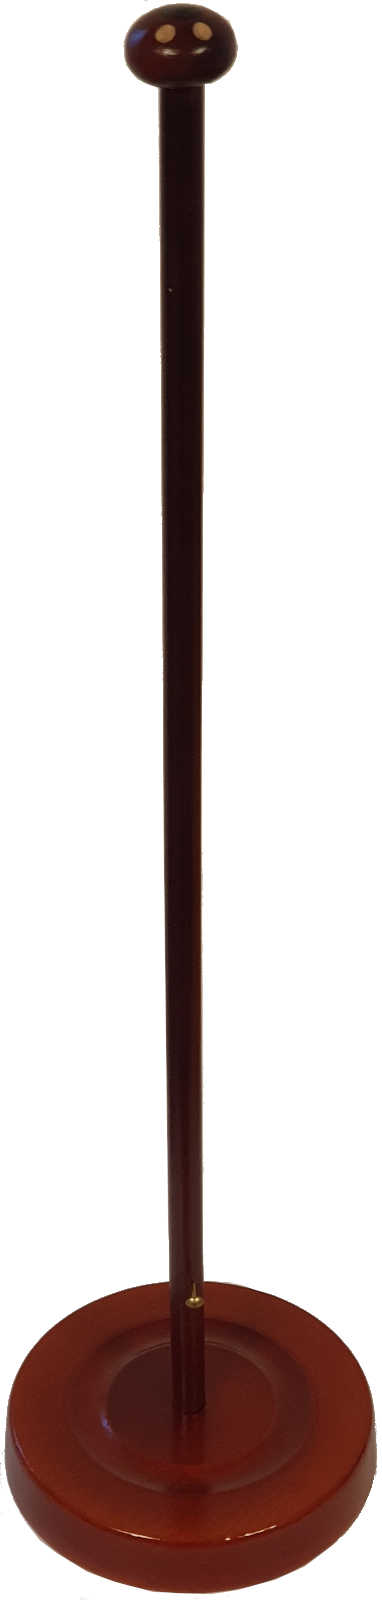 Tischflaggenständer Holz Farbe Mahagoni Rillenfuß 11 cm